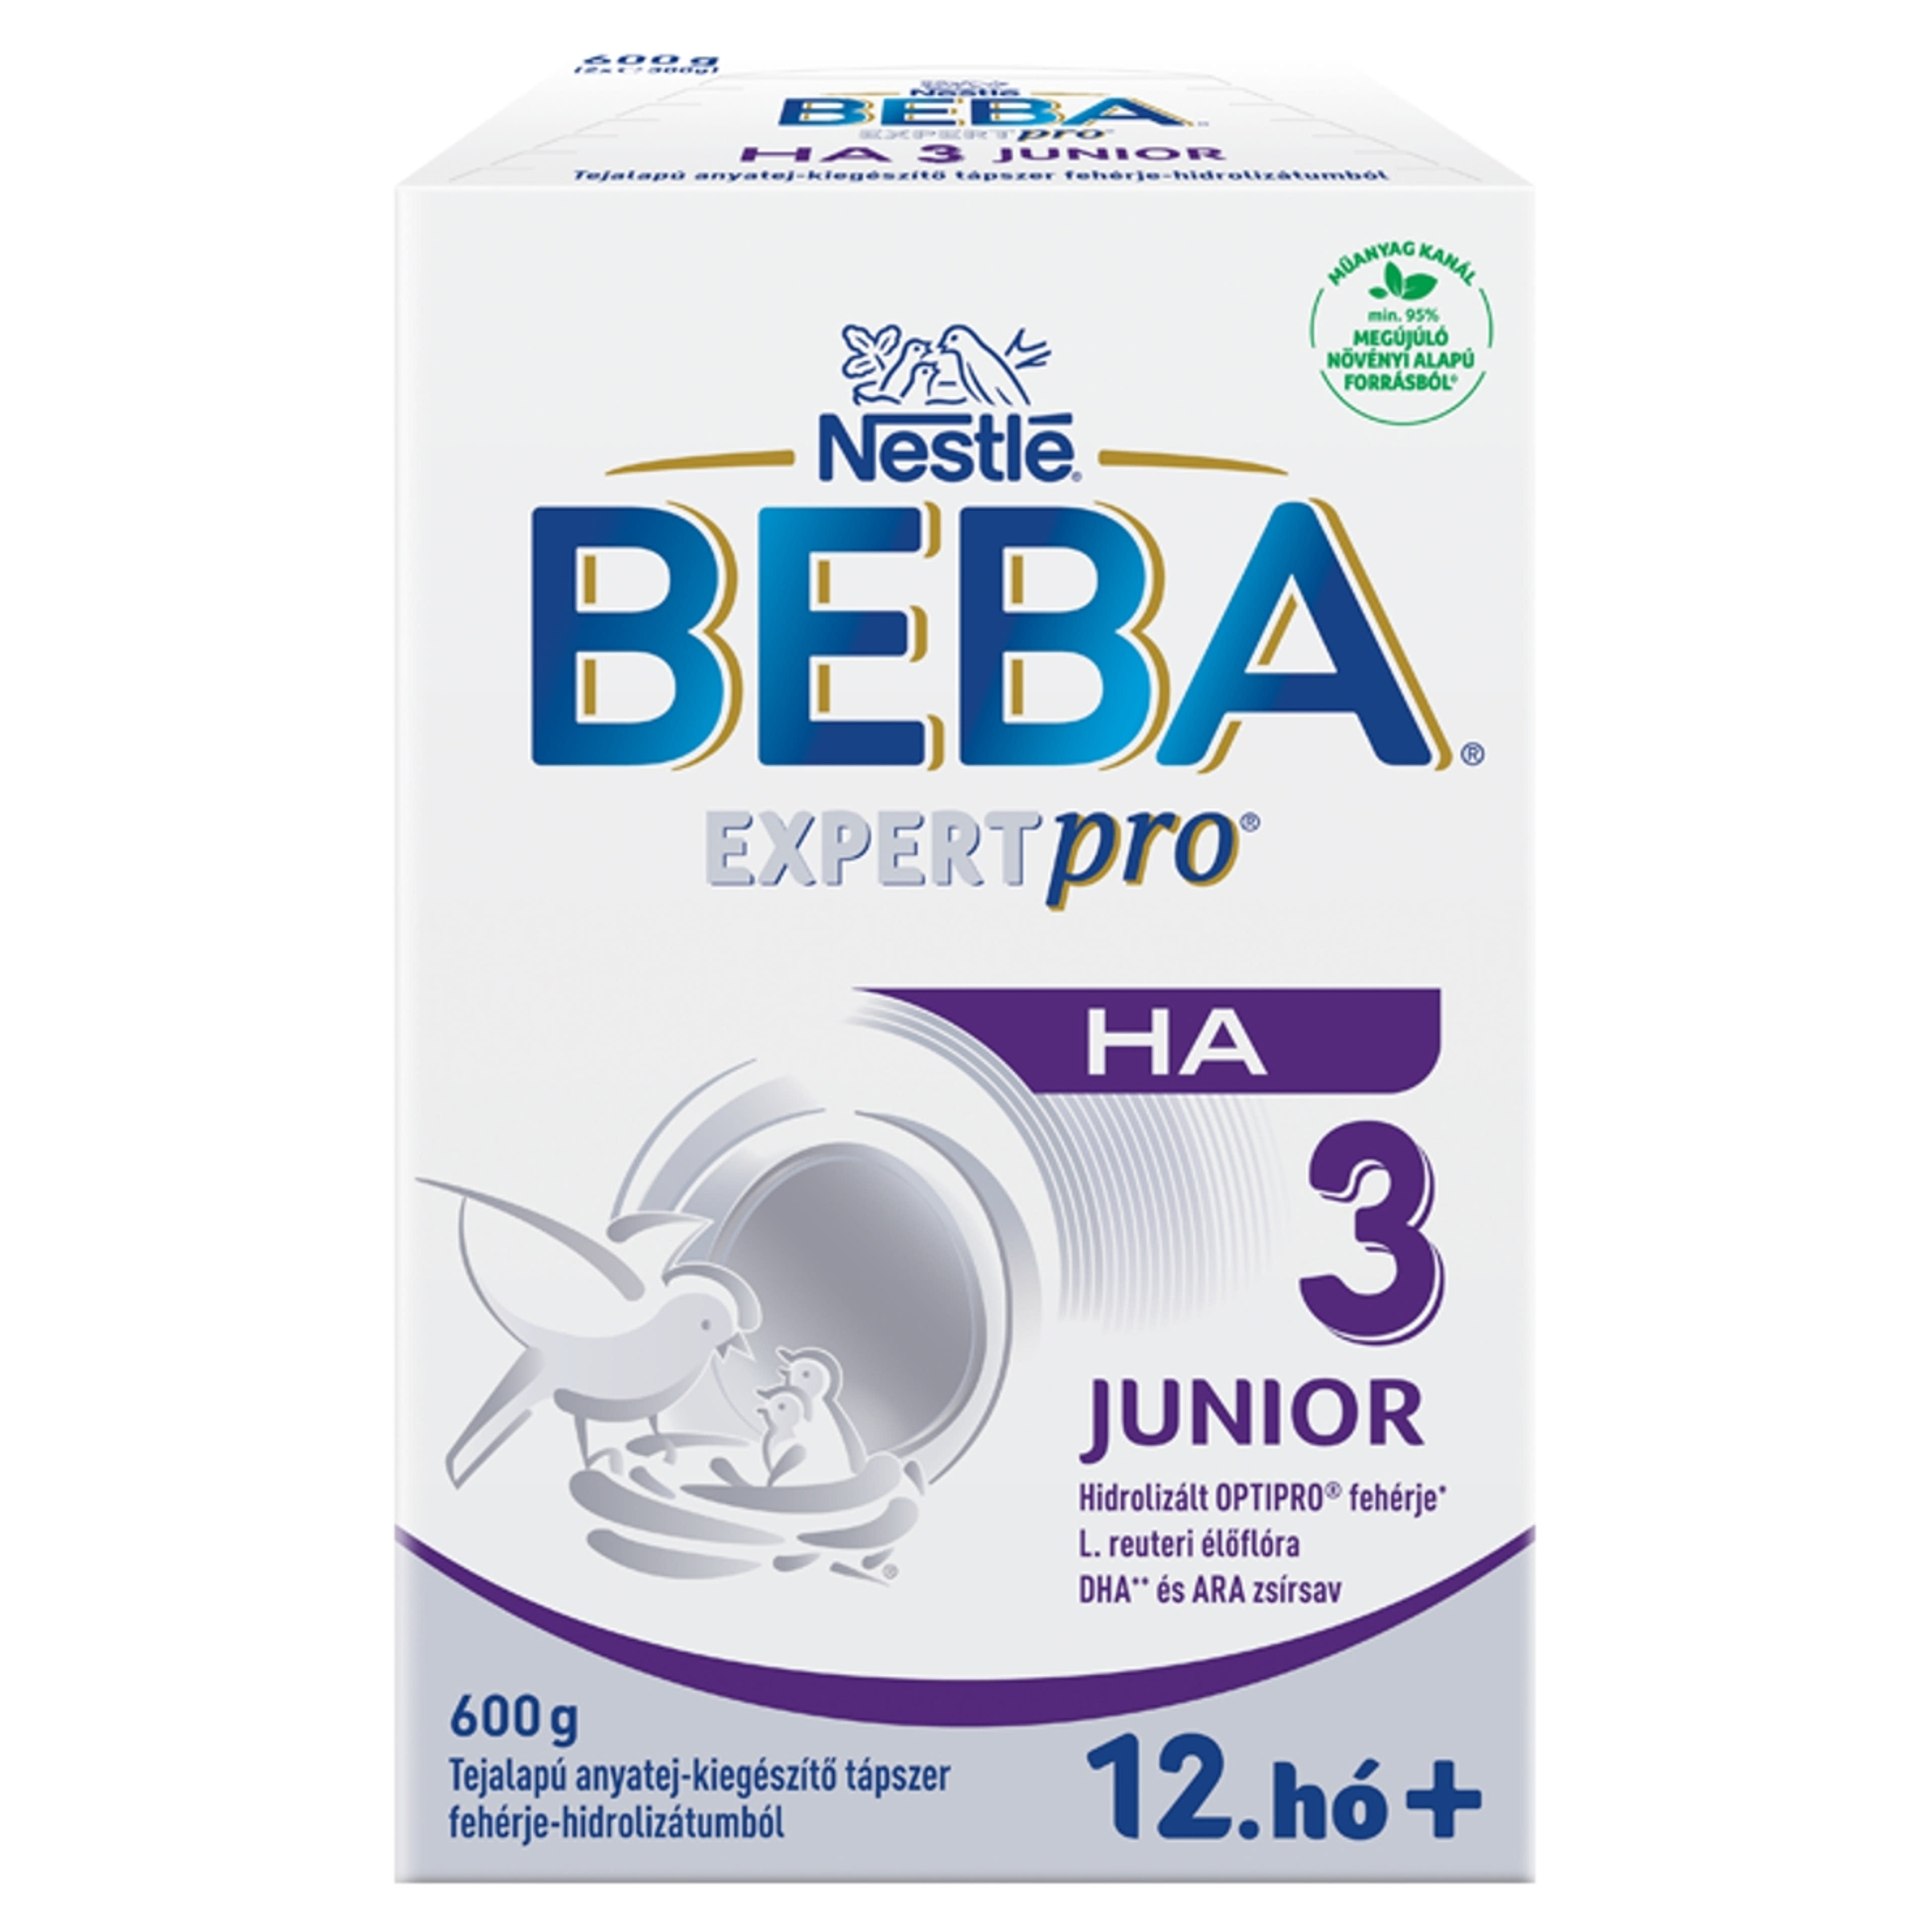 Beba Expertpro HA 3 Junior tejalapú anyatej-kiegészítő tápszer fehérje-hidrolizátumból 12.hónapos kortól - 600 g-1